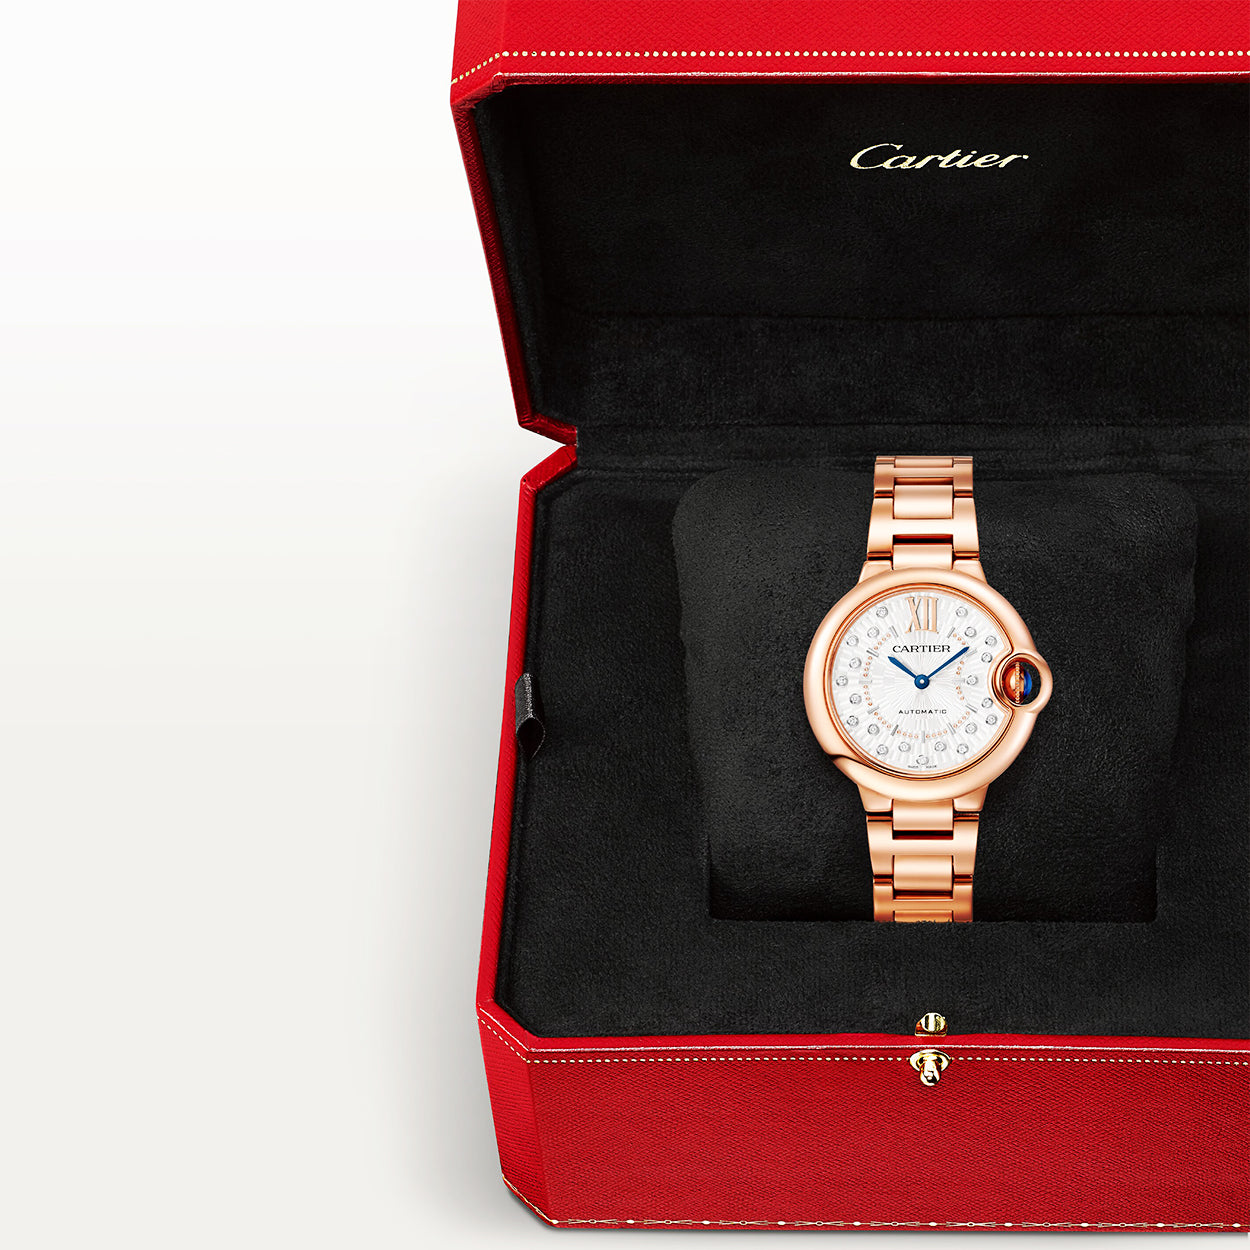 Ballon Bleu de Cartier 18ct Rose Gold Diamond Dial Bracelet Watch